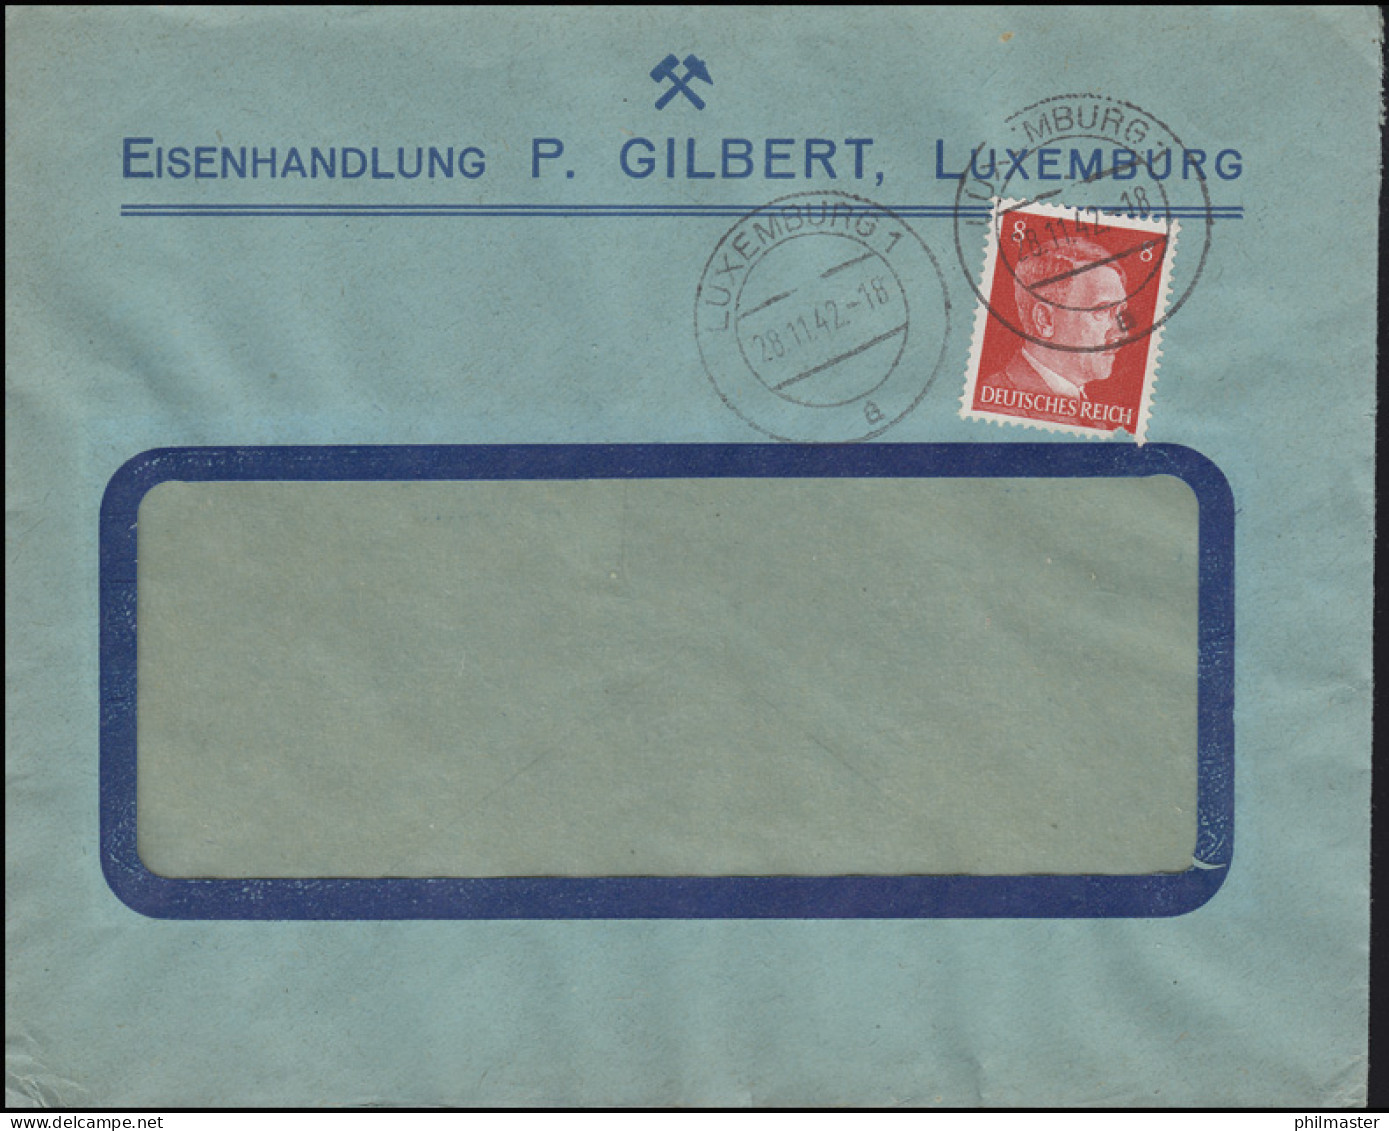 Freimarke Hitler 8 Pf. Fensterbrief Eisenhandlung Gilbert LUXEMBURG 28.11.42 - Usines & Industries